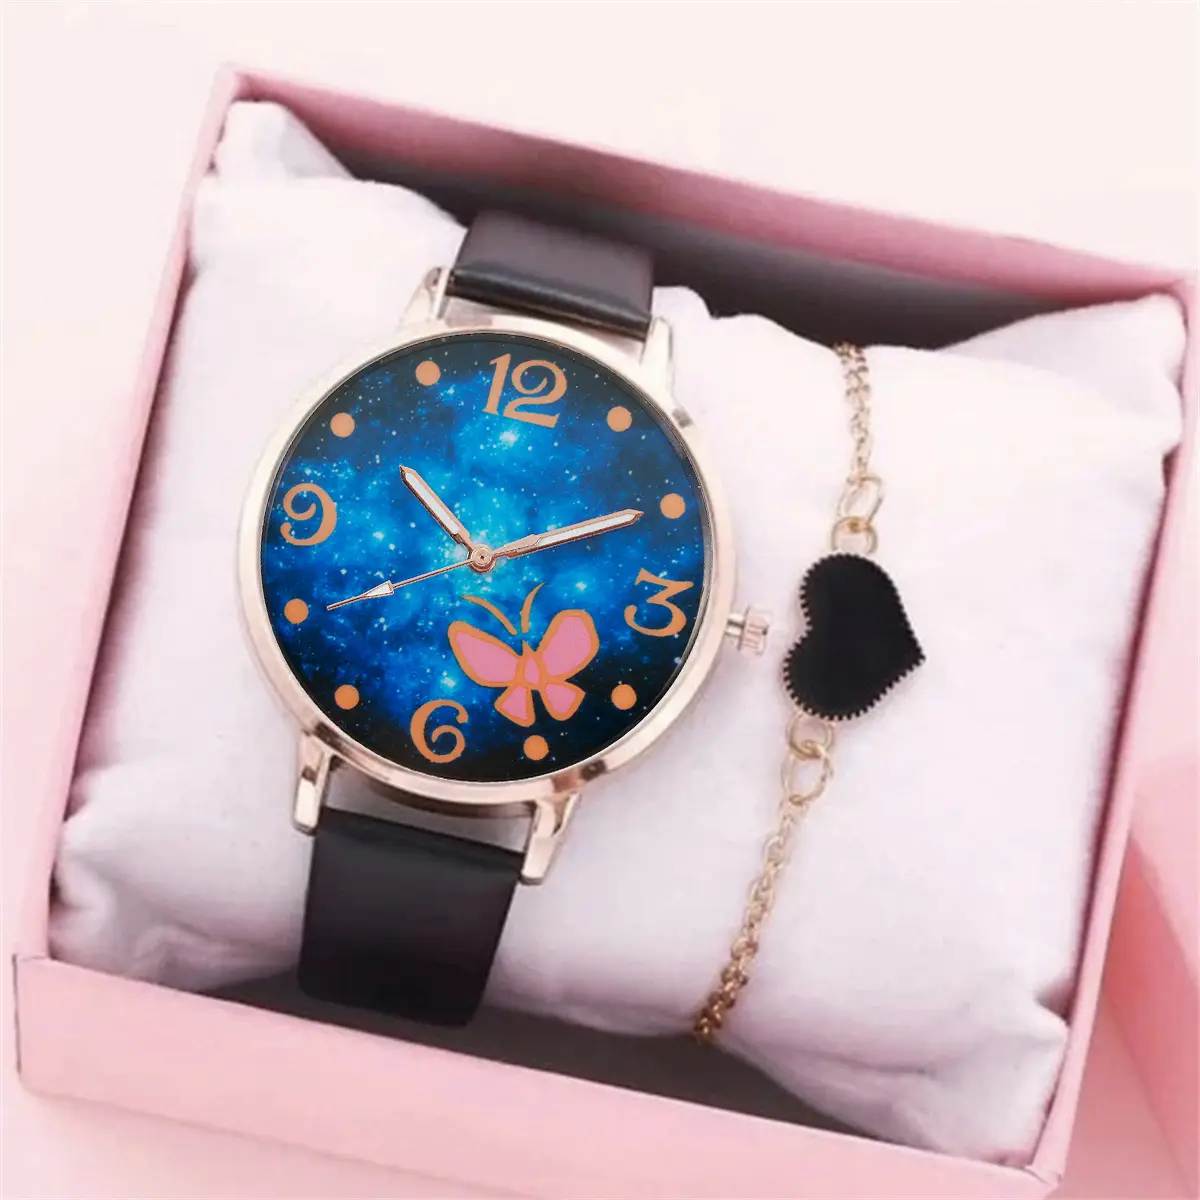 YuSa516 공장 다이렉트 하트 간단한 숙녀 시계 가죽 벨트 2pcs 세트 우아한 여성 팔찌 시계 여성 선물